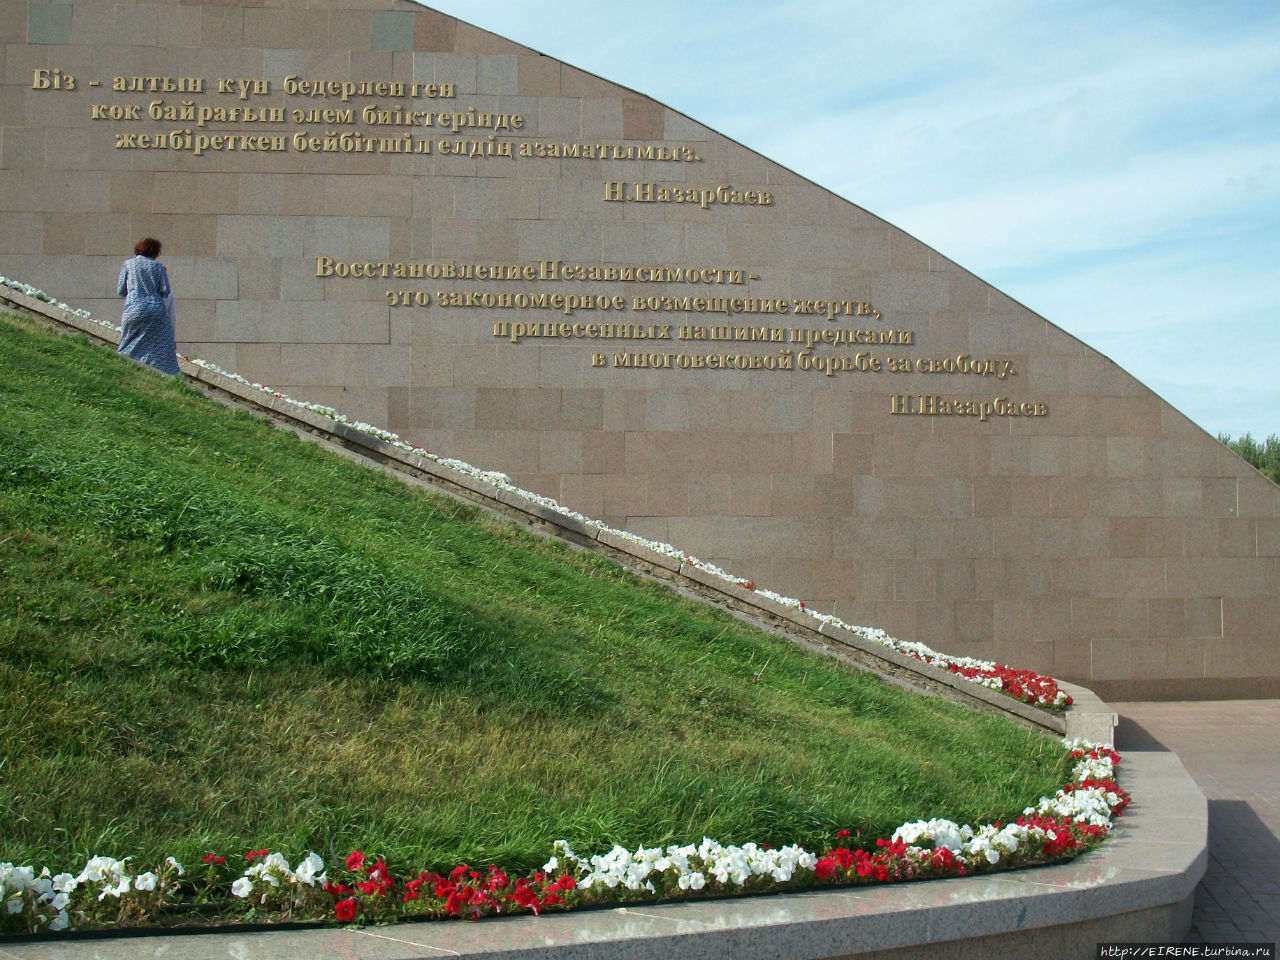 Мемориал восстановления Независимости. Астана, Казахстан